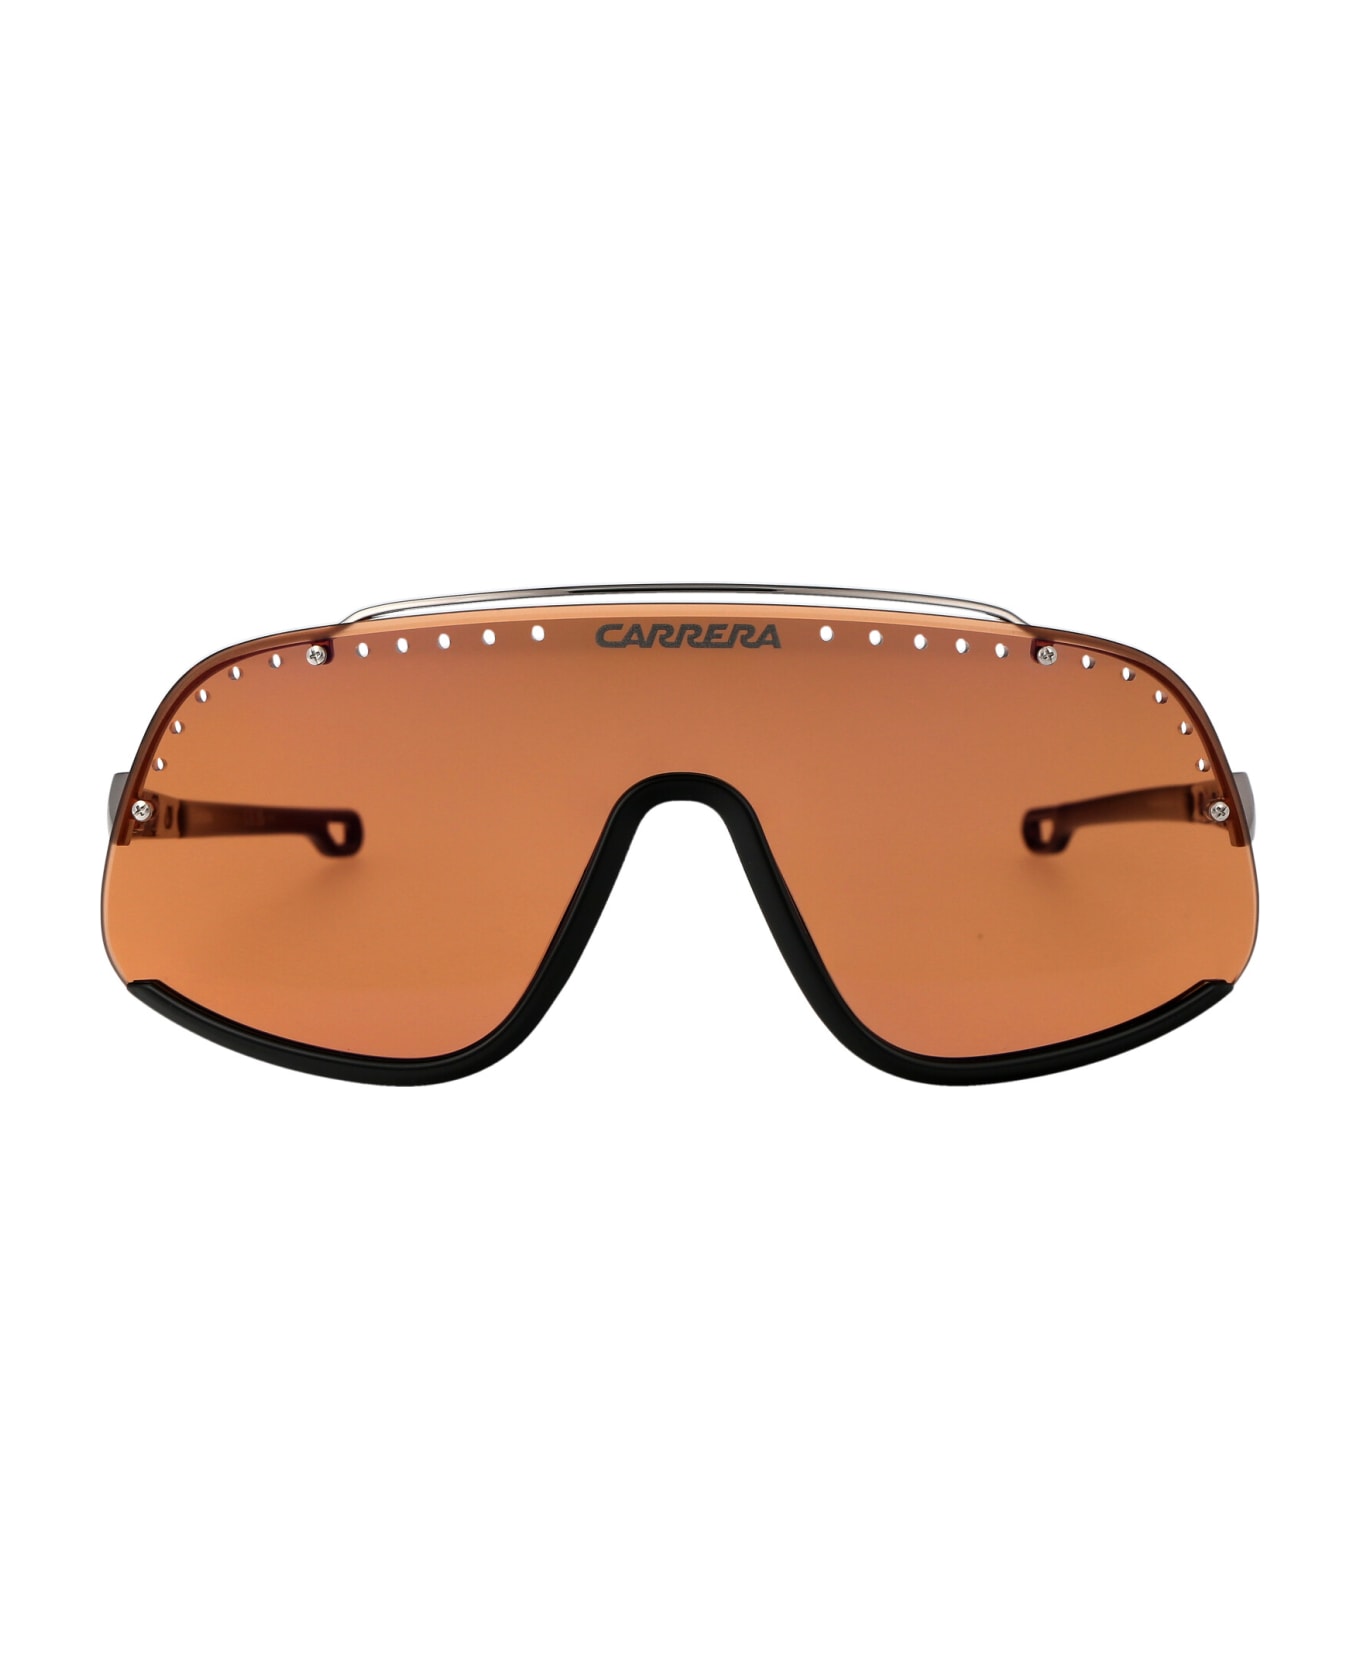 Carrera Flaglab 16 Sunglasses - 8IJDP ORN RUT